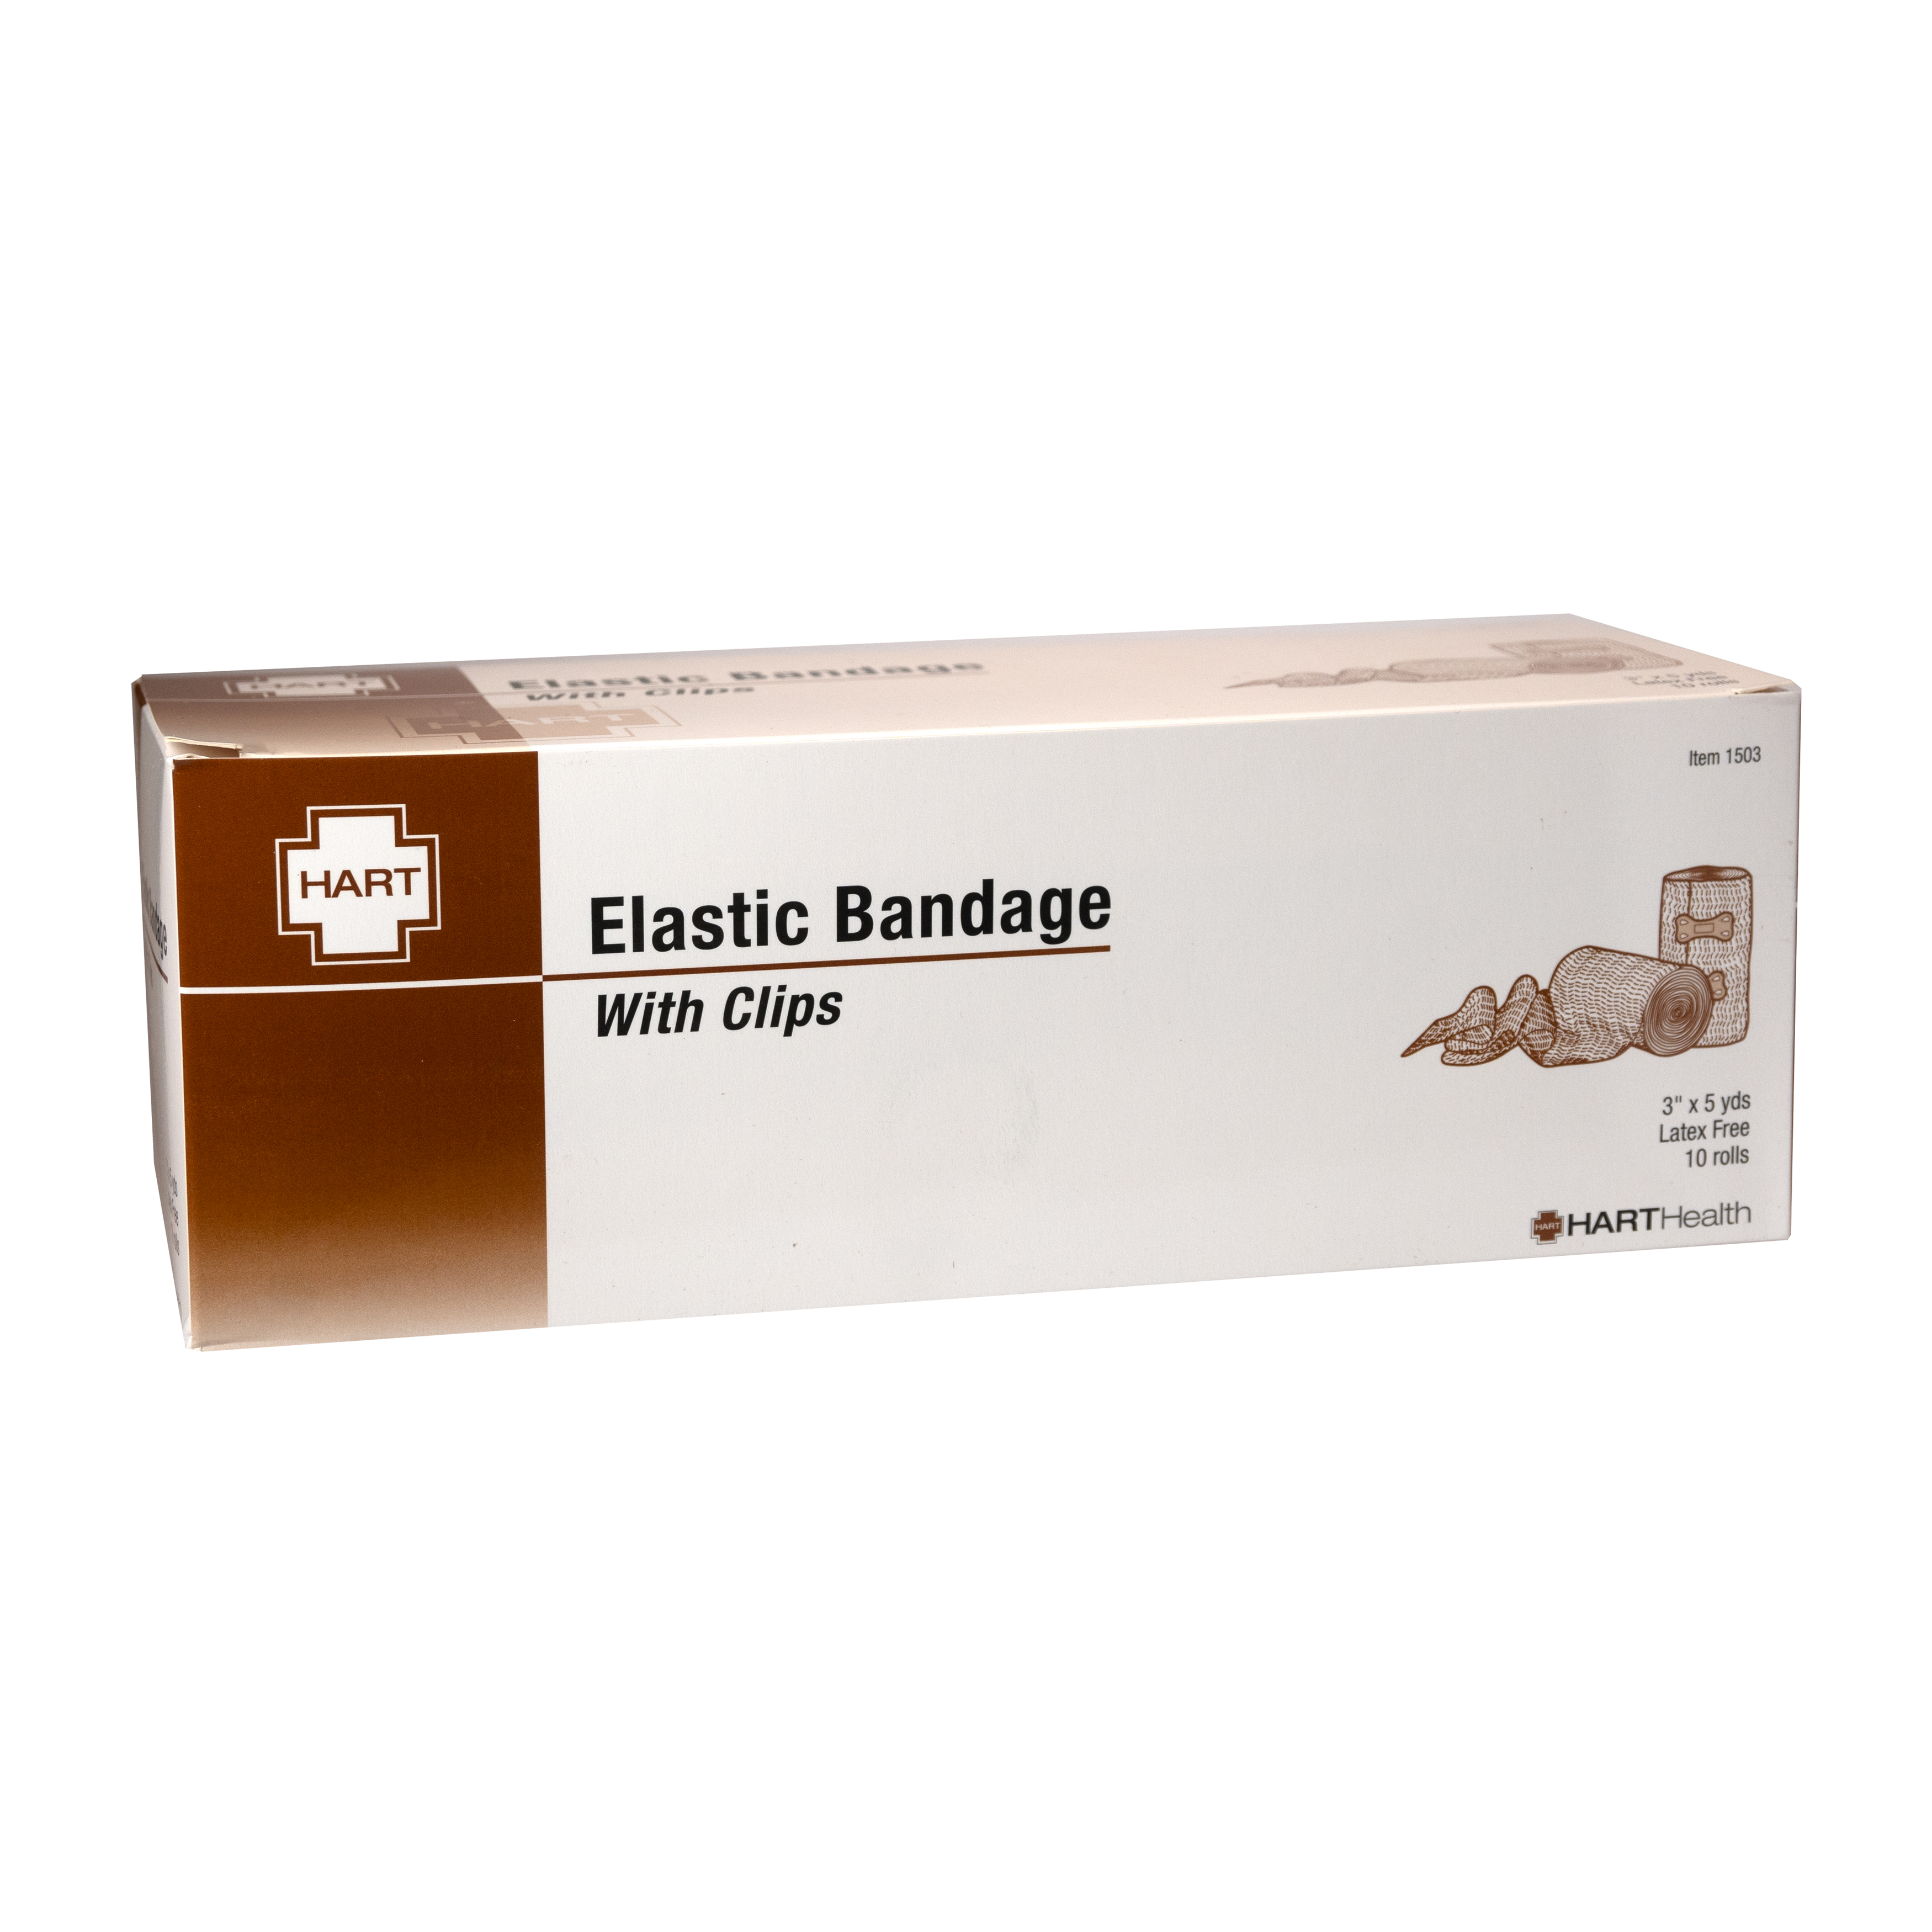 Elastic Bandage, 3" x 5 yards